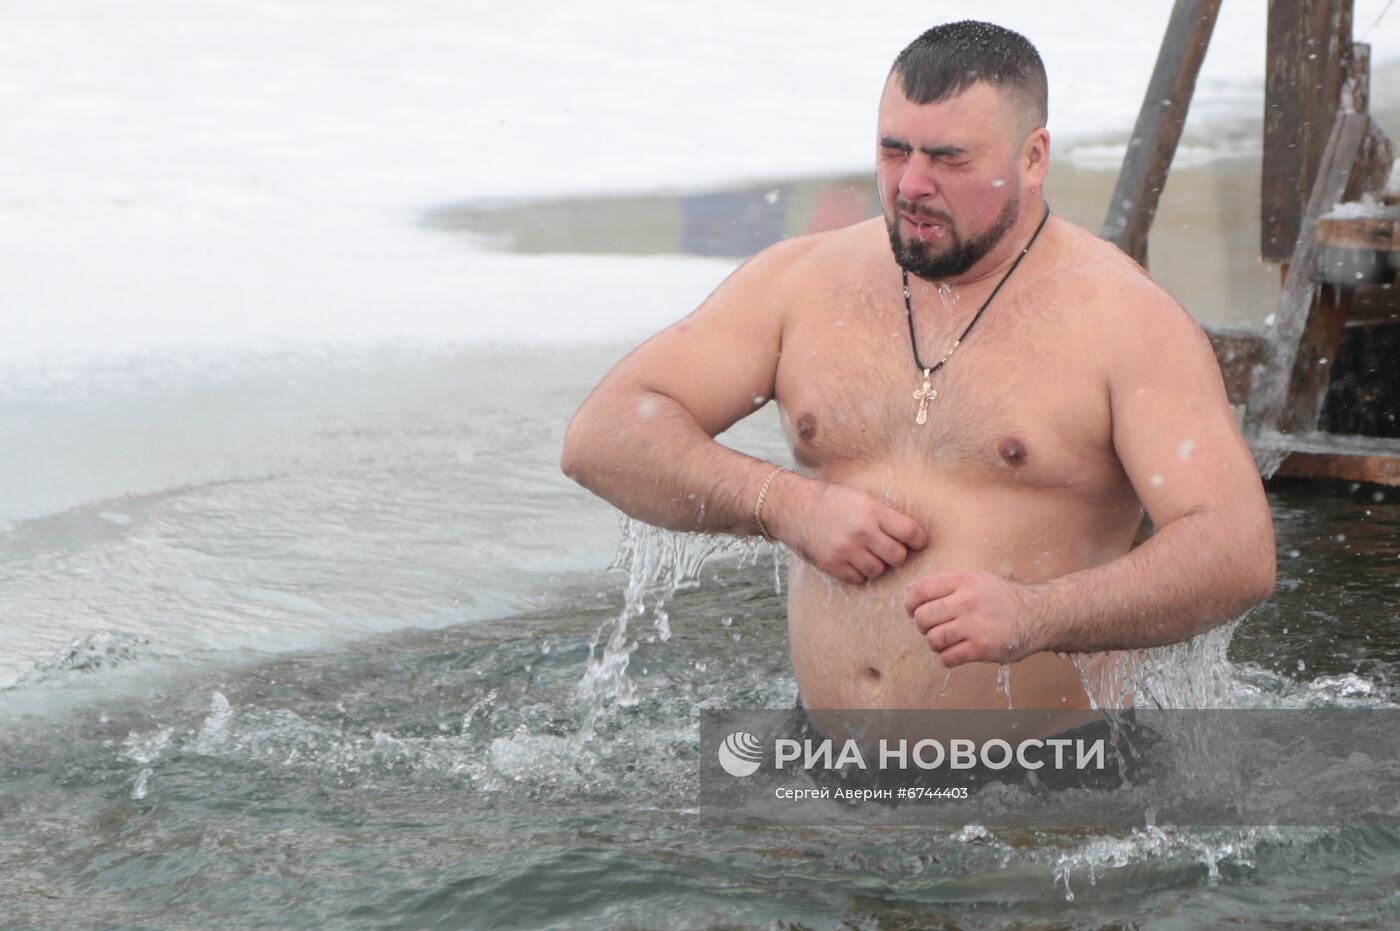 Крещенские купания в ДНР